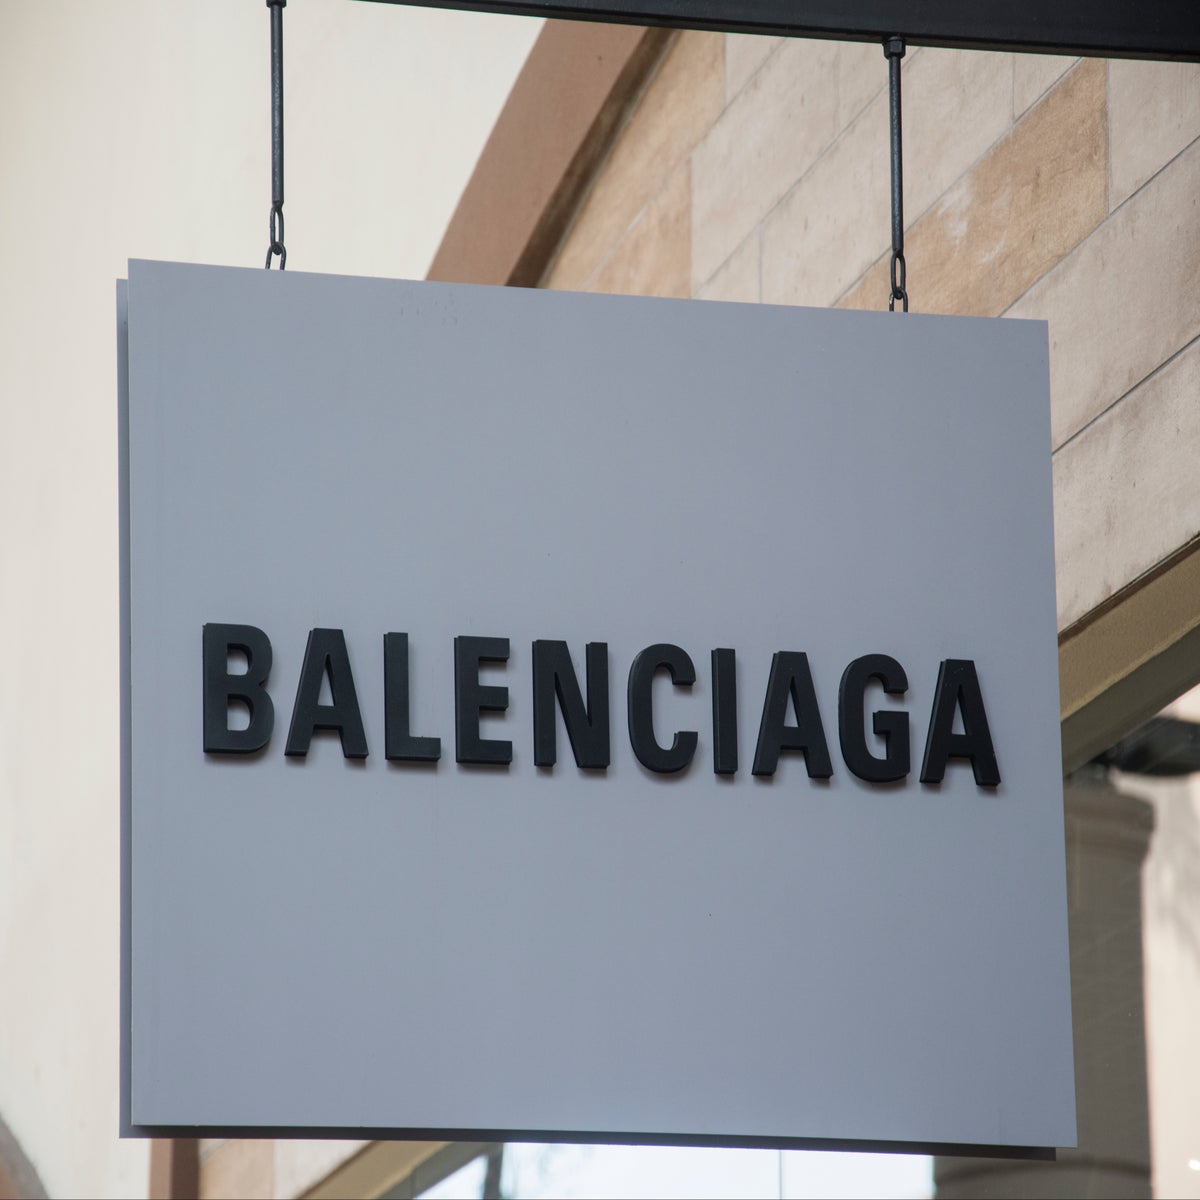 Error of judgment': Balenciaga's creative director Demna Gvasalia